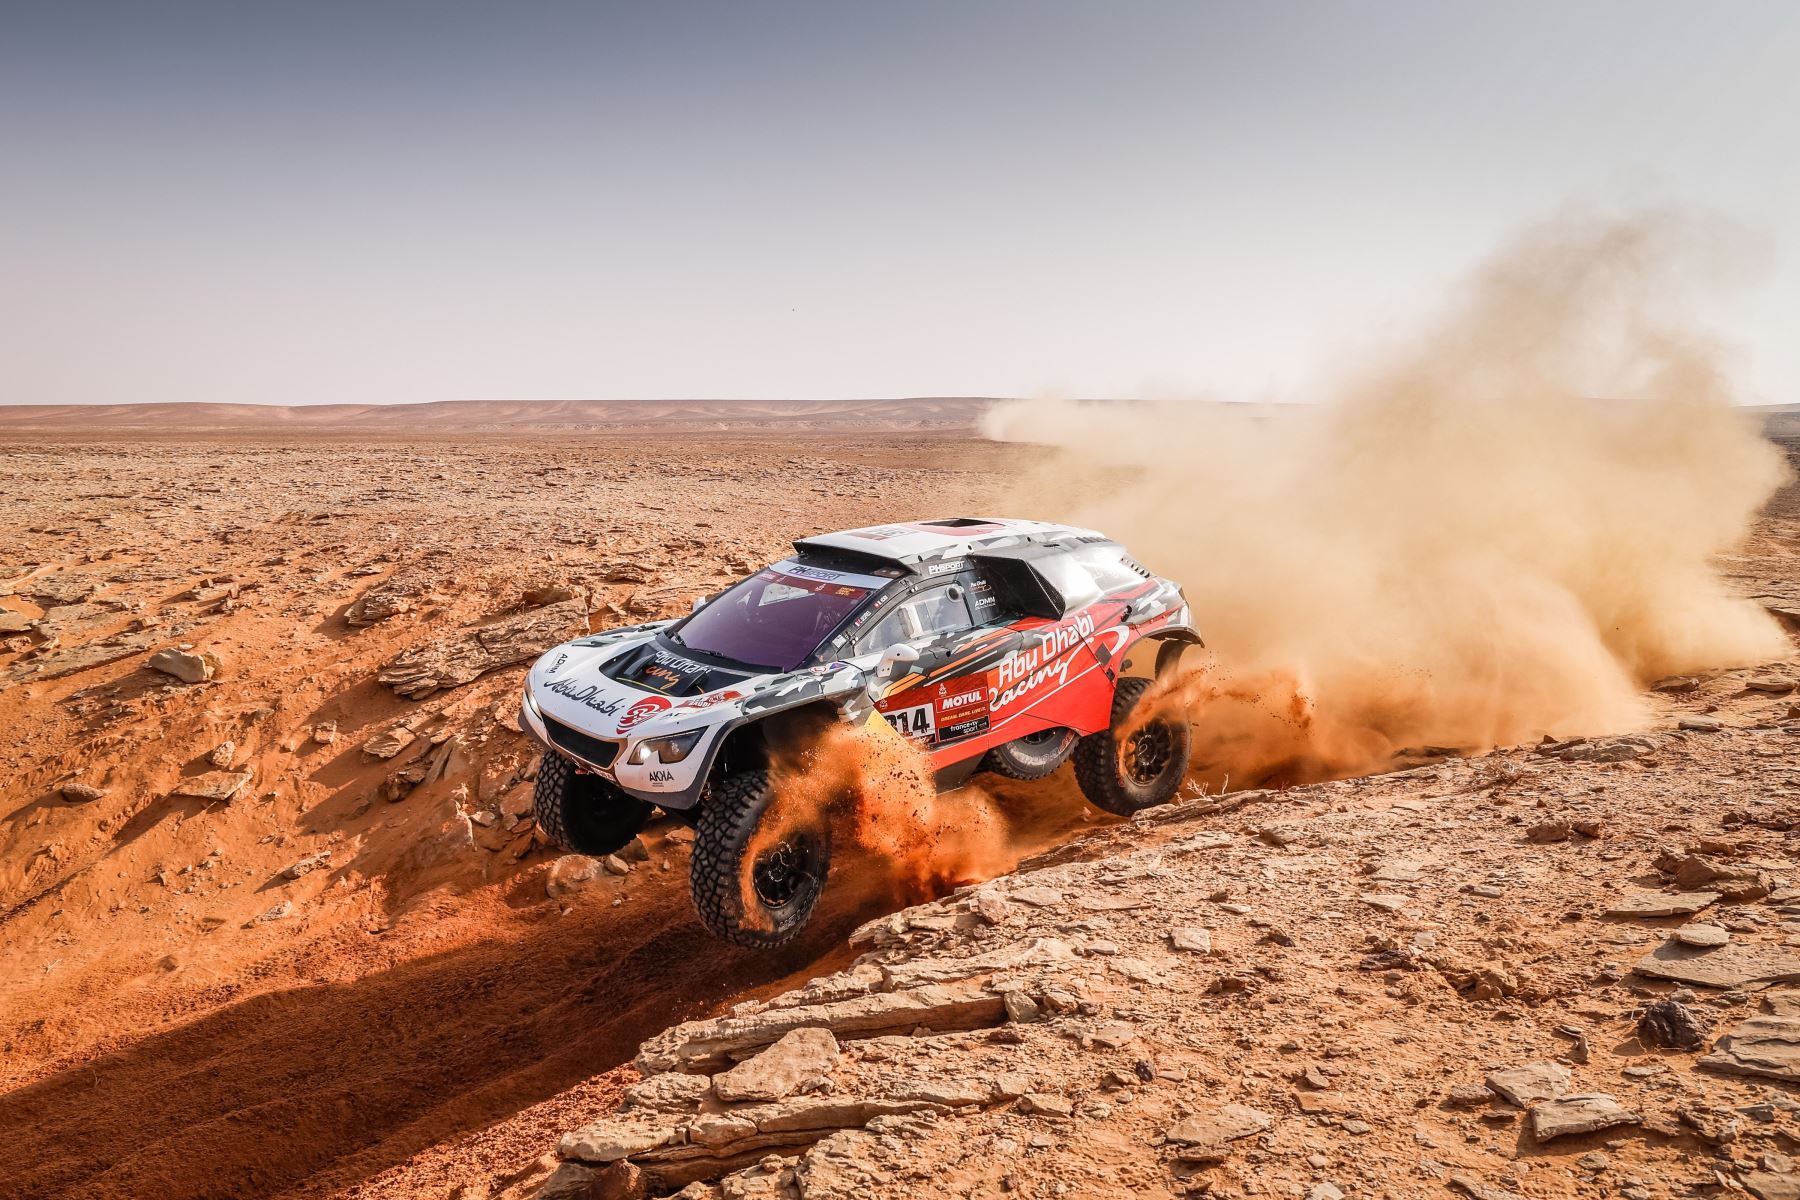 Cyril Despres de Francia y Mike Horn de Suiza, Peugeot, PH Sport, Abu Dhabi Racing, en acción durante la octava etapa del Dakar 2021 entre Sakaka y Neom, Arabia Saudita. Foto: EFE